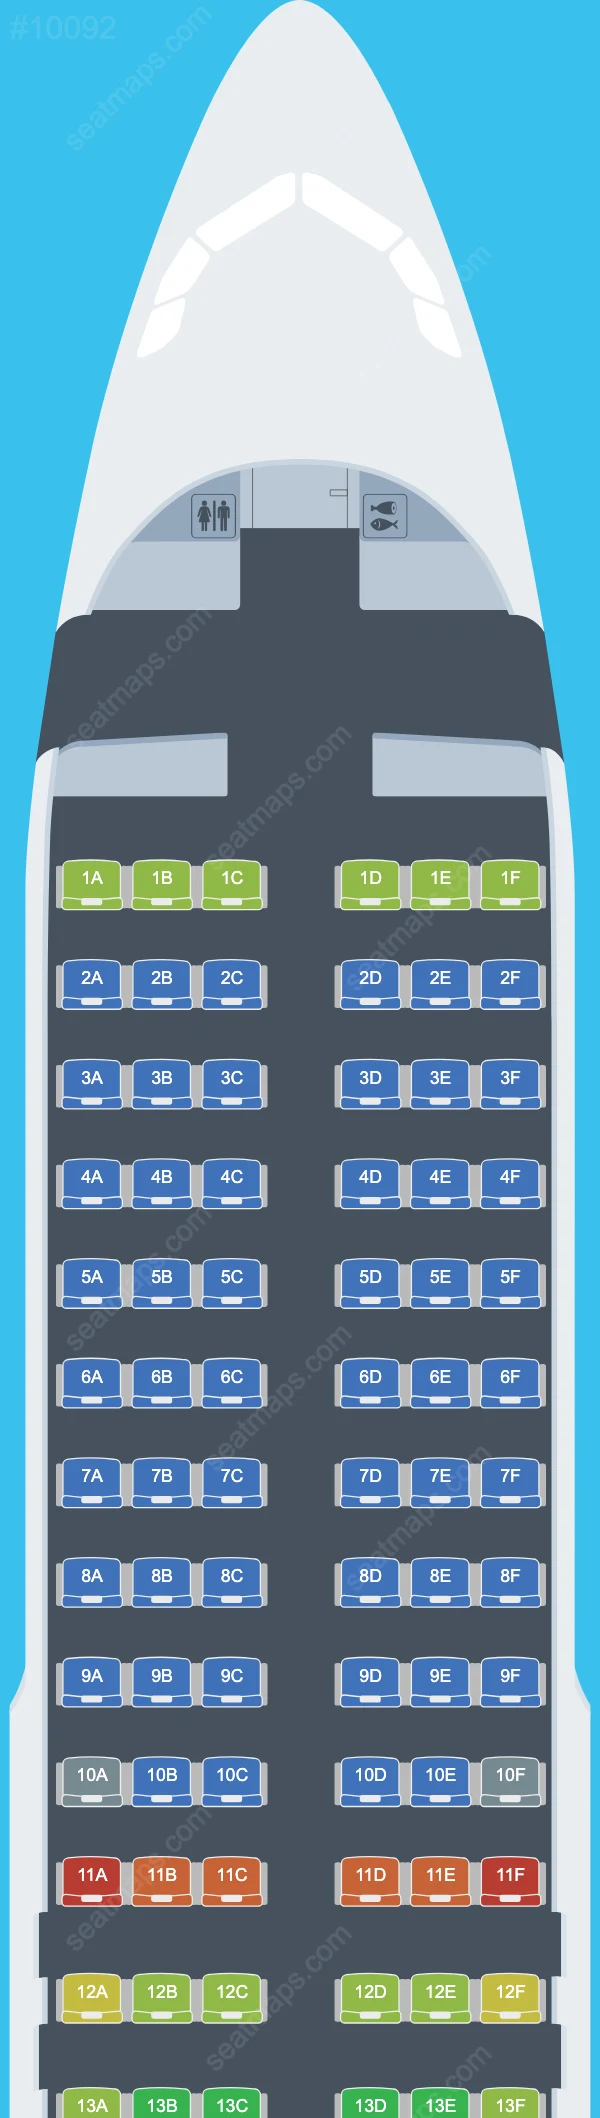 Air Astana Airbus A320 Seat Maps A320-200neo V.2